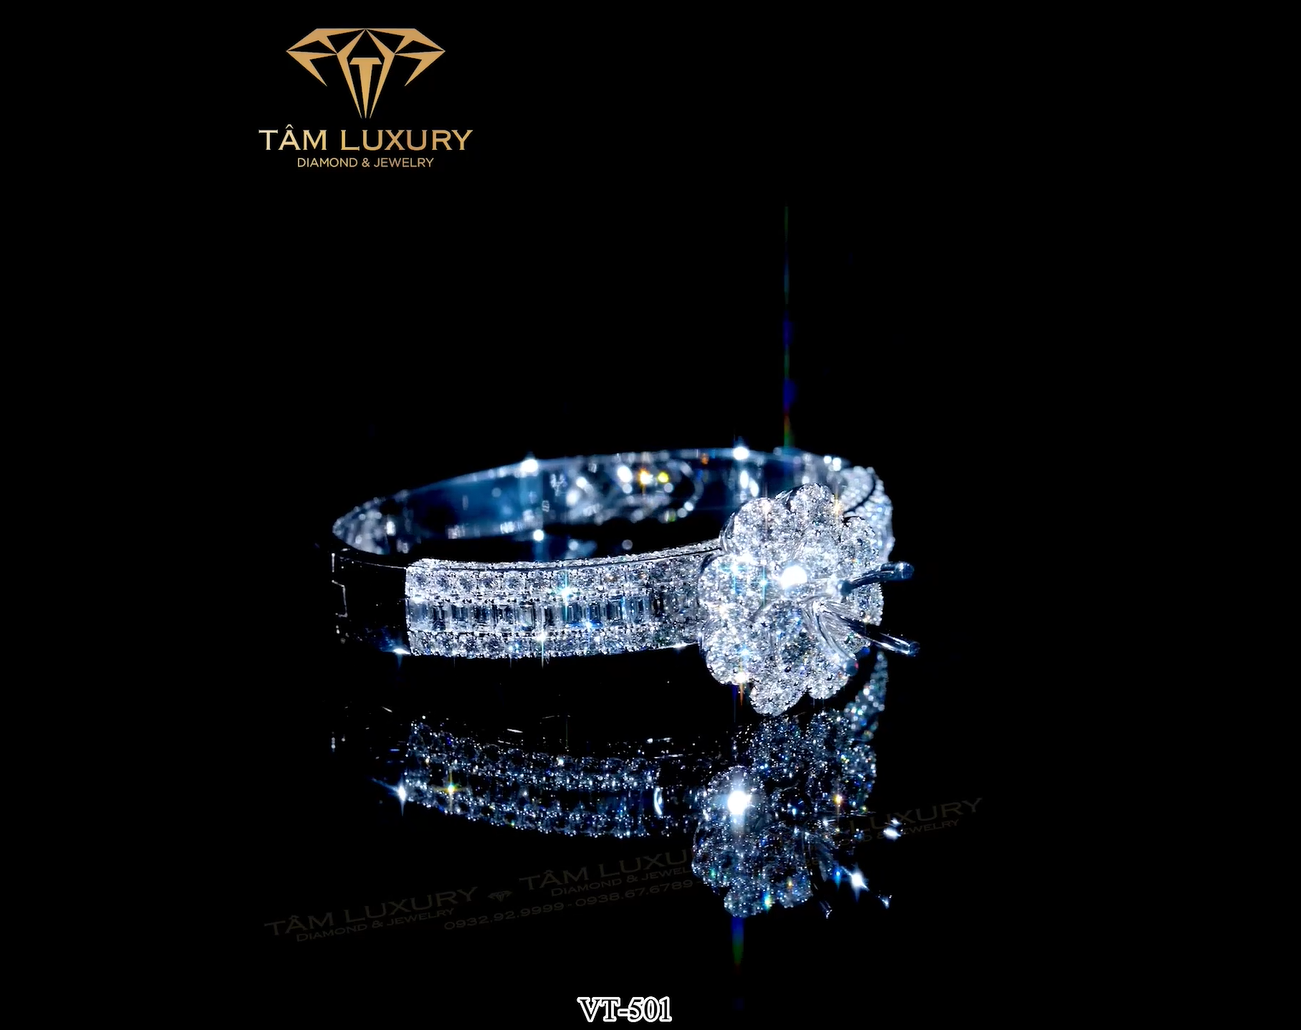  Kim cương là loại đá quý được sử dụng phổ biến nhất để chế tác trang sức như nhẫn, vòng tay, bông tai,...